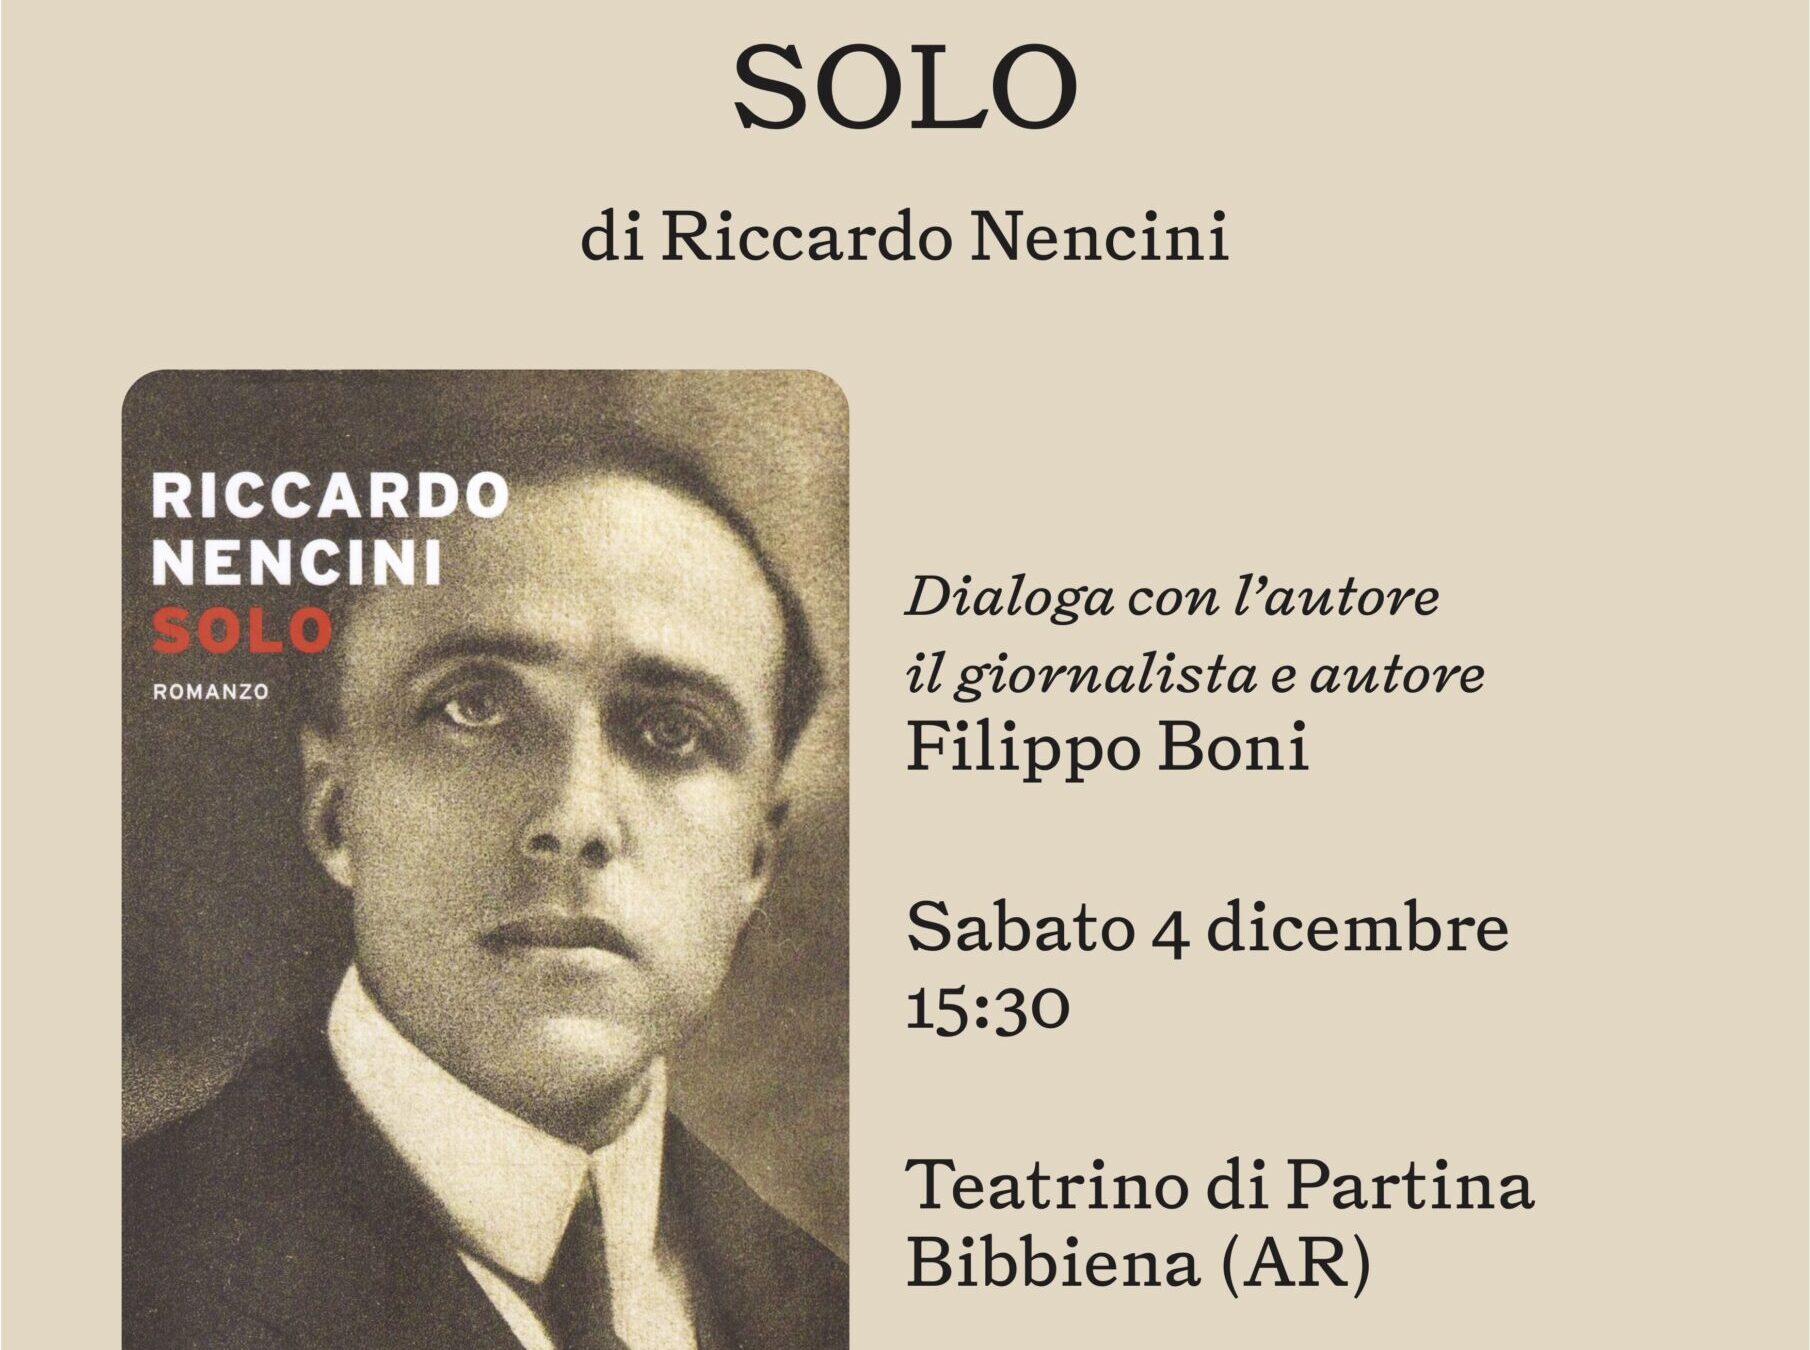 Riccardo Nencini presenta “Solo”: un libro dedicato a Giacomo Matteotti